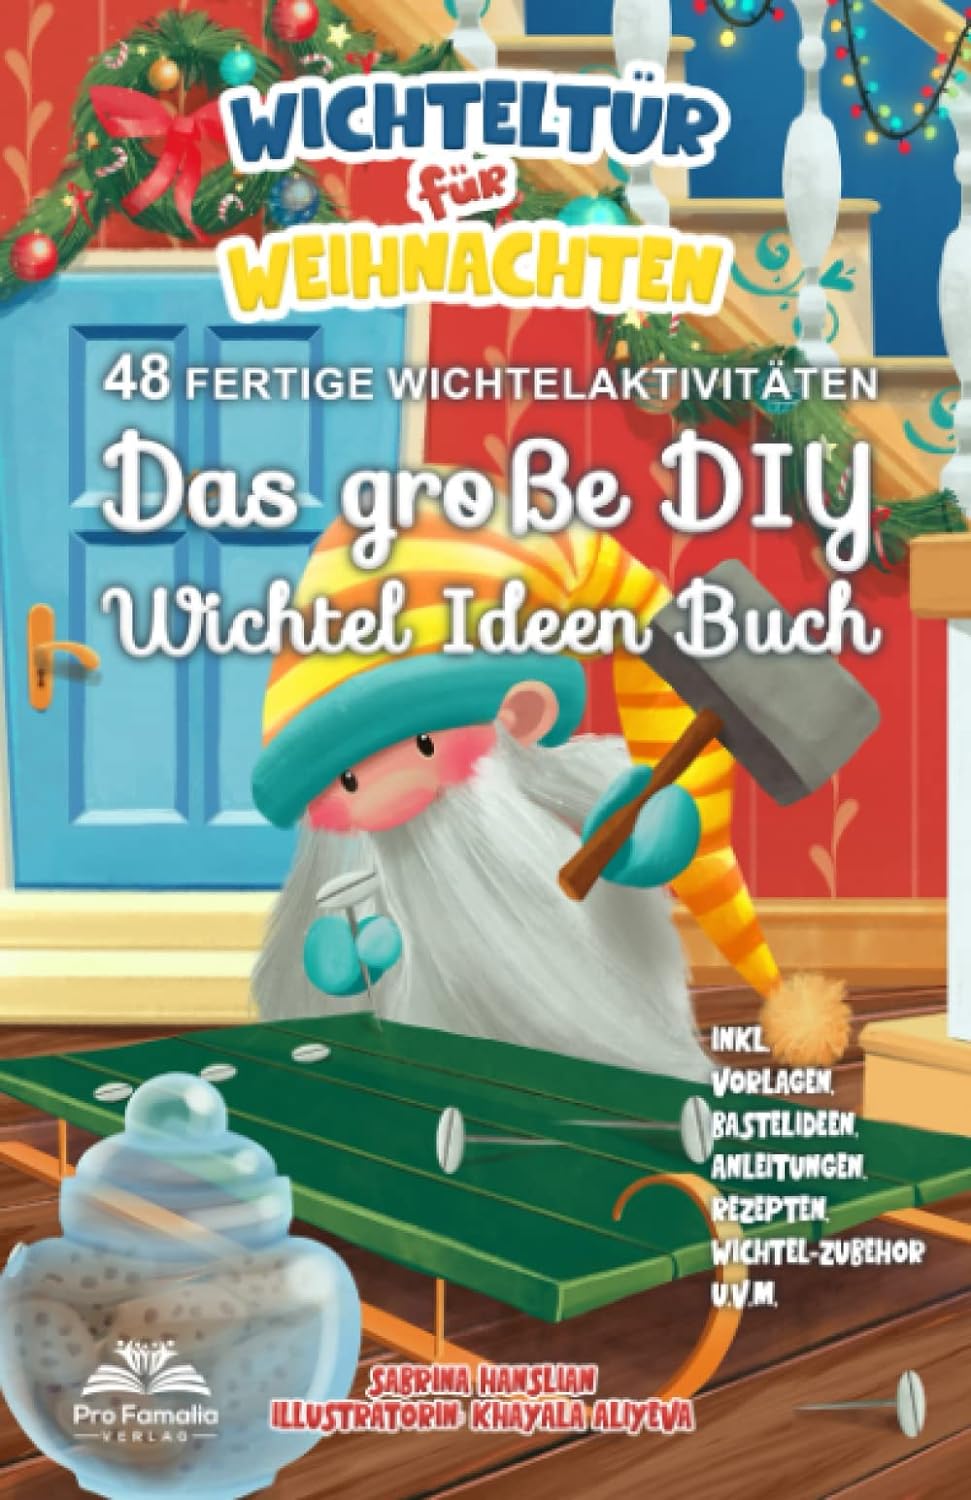 Wichteltür für Weihnachten: Das große DIY Wichtel Ideen Buch - 48 fertige Wichtelaktivitäten. inkl. DIY-Vorlagen, Bastelideen, Anleitungen, Rezepten,...